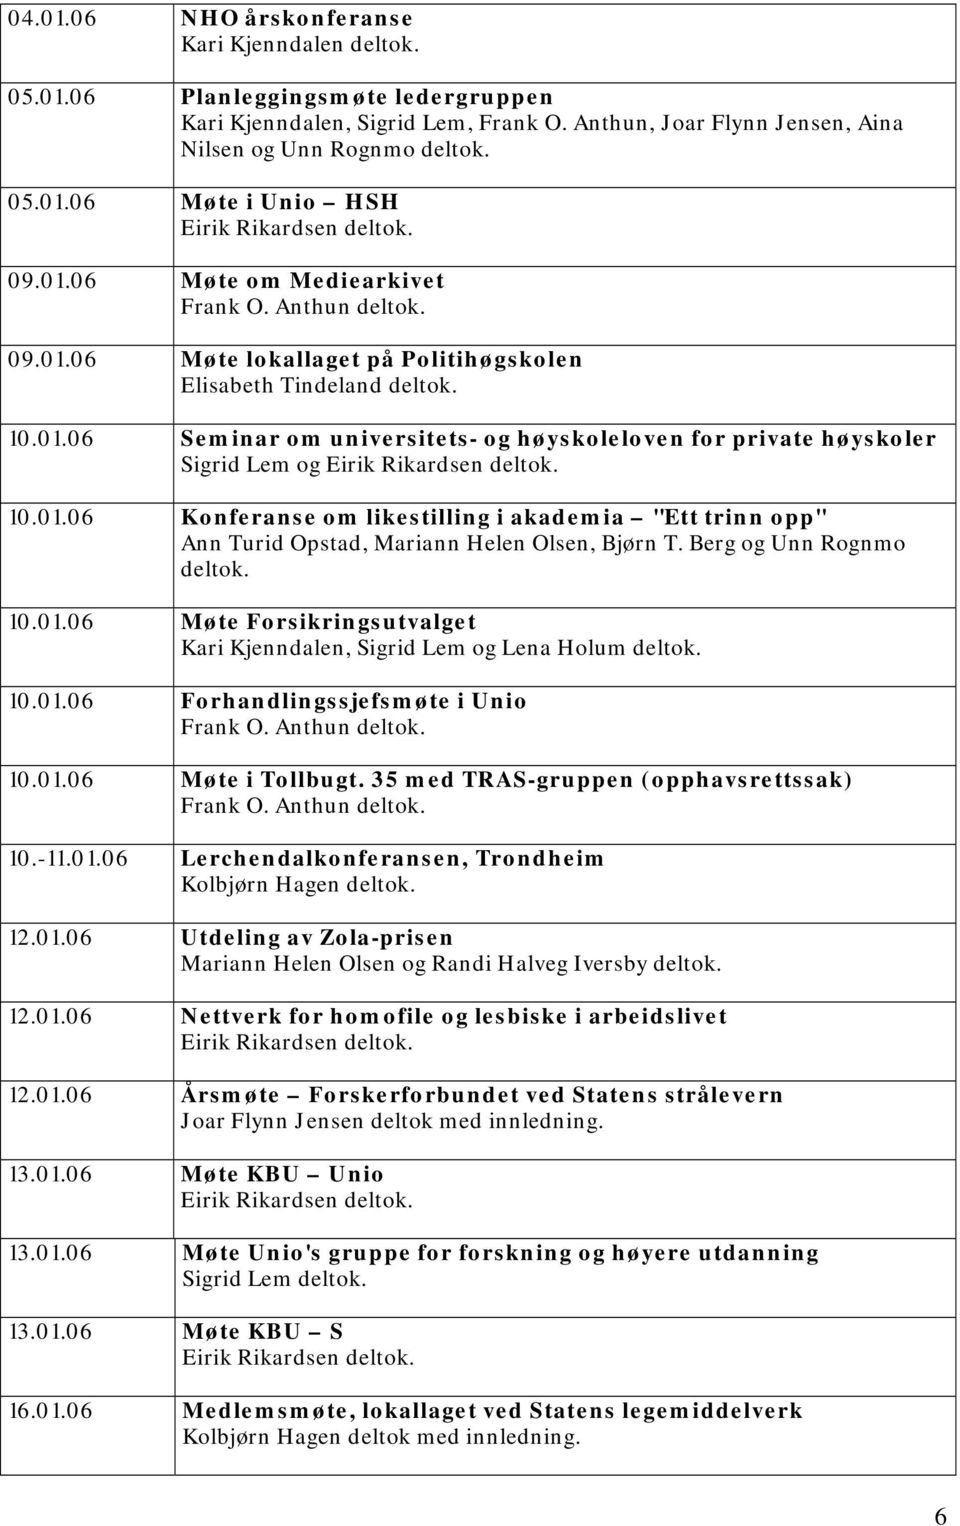 Berg og Unn Rognmo deltok. 10.01.06 Møte Forsikringsutvalget Kari Kjenndalen, Sigrid Lem og Lena Holum deltok. 10.01.06 Forhandlingssjefsmøte i Unio 10.01.06 Møte i Tollbugt.